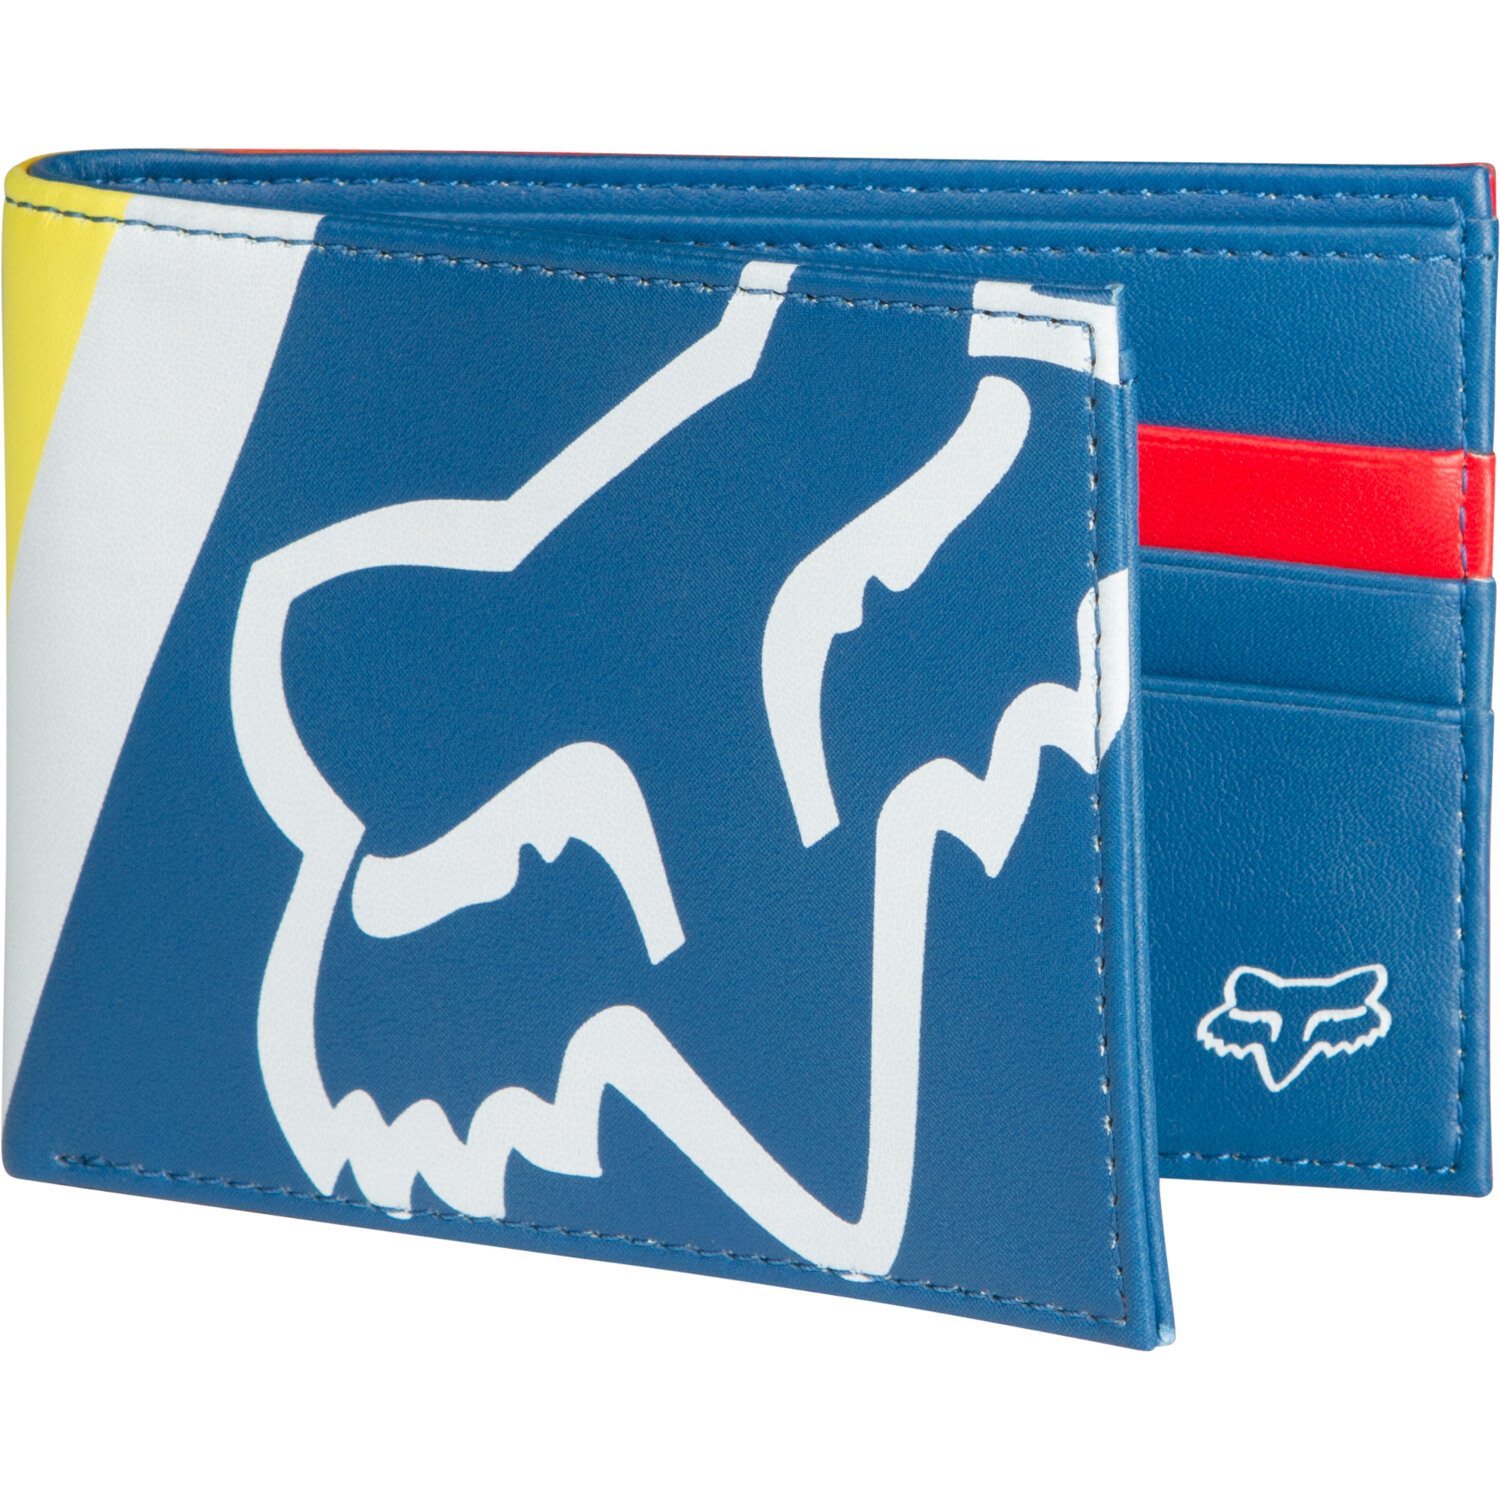 Fox Wallet Darftr Pinned Dusty Blue